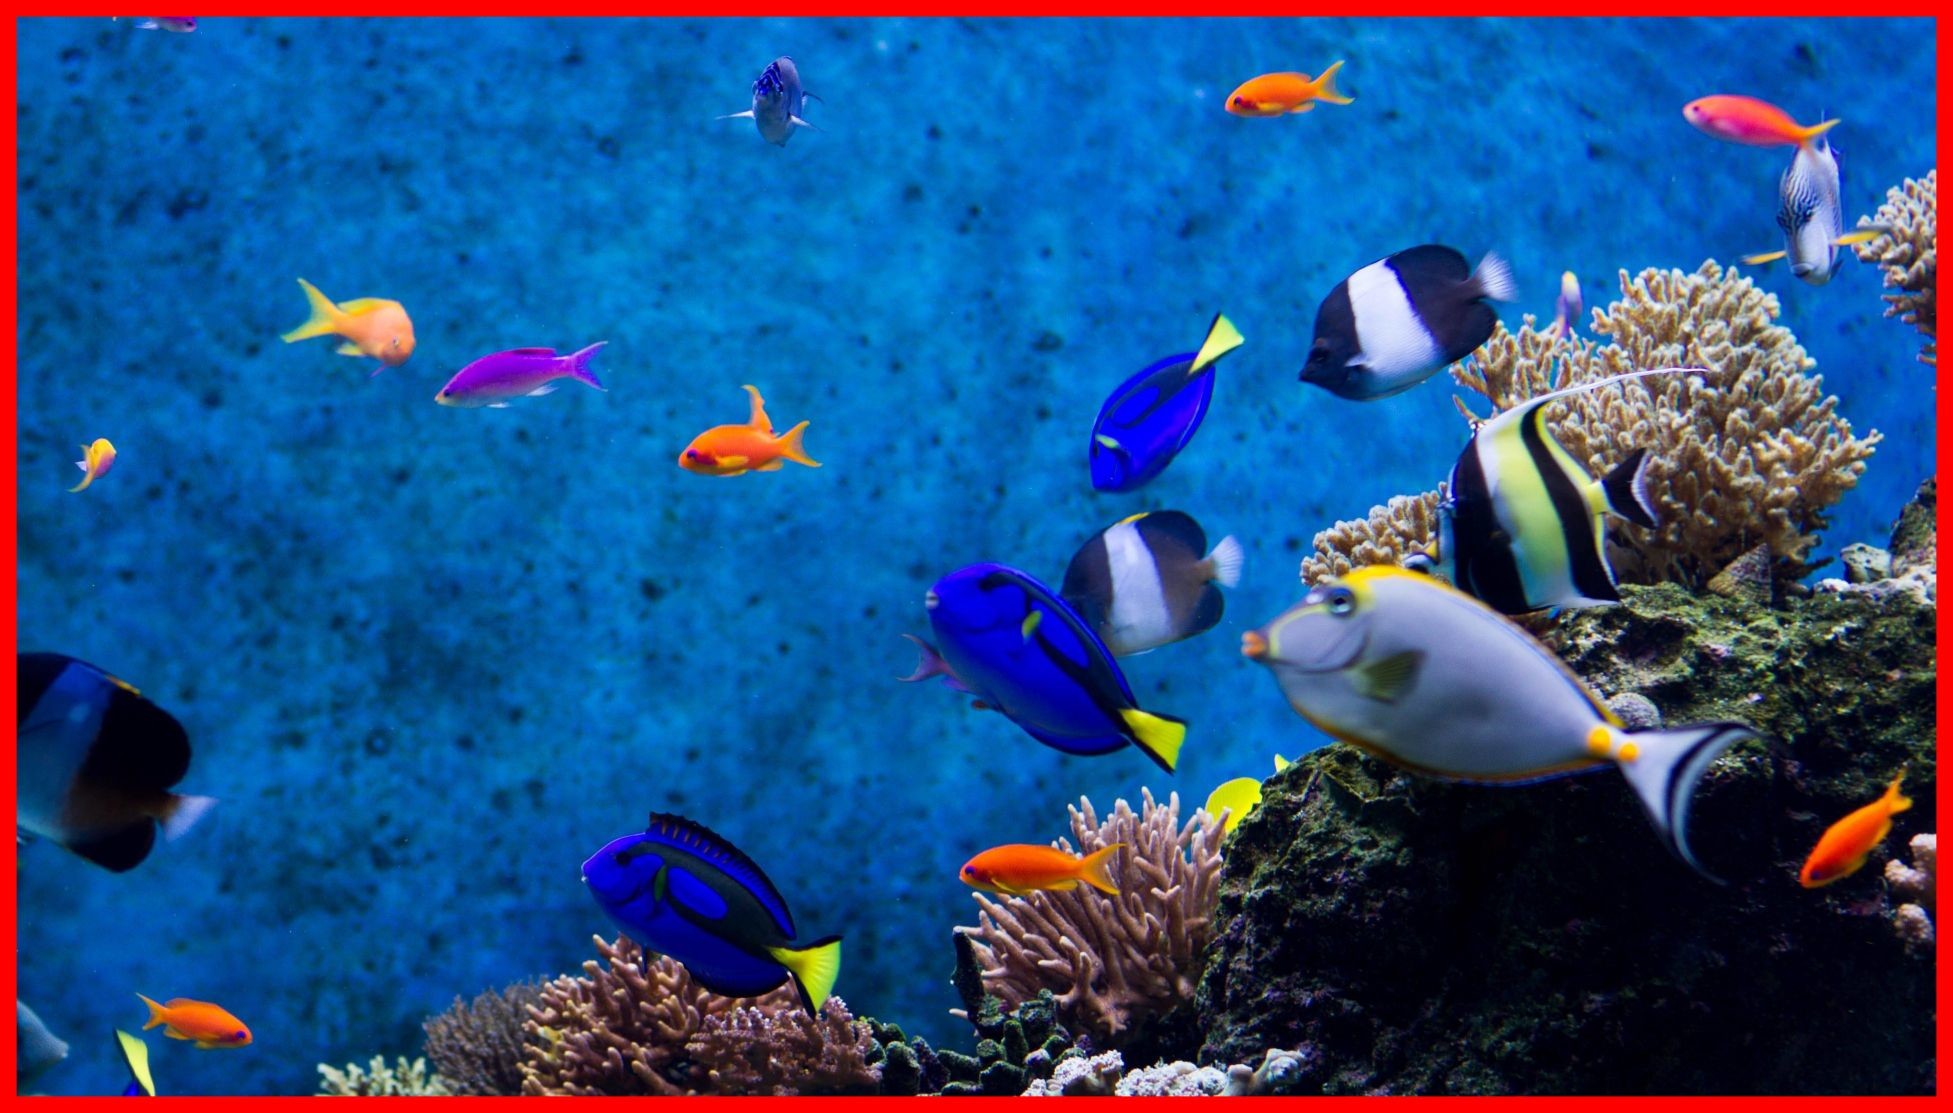 1953x1113, Fish Images Fish Aquarium Images Free Download - Aquarium Live  Wallpaper For Windows 10 - 1953x1113 Wallpaper 